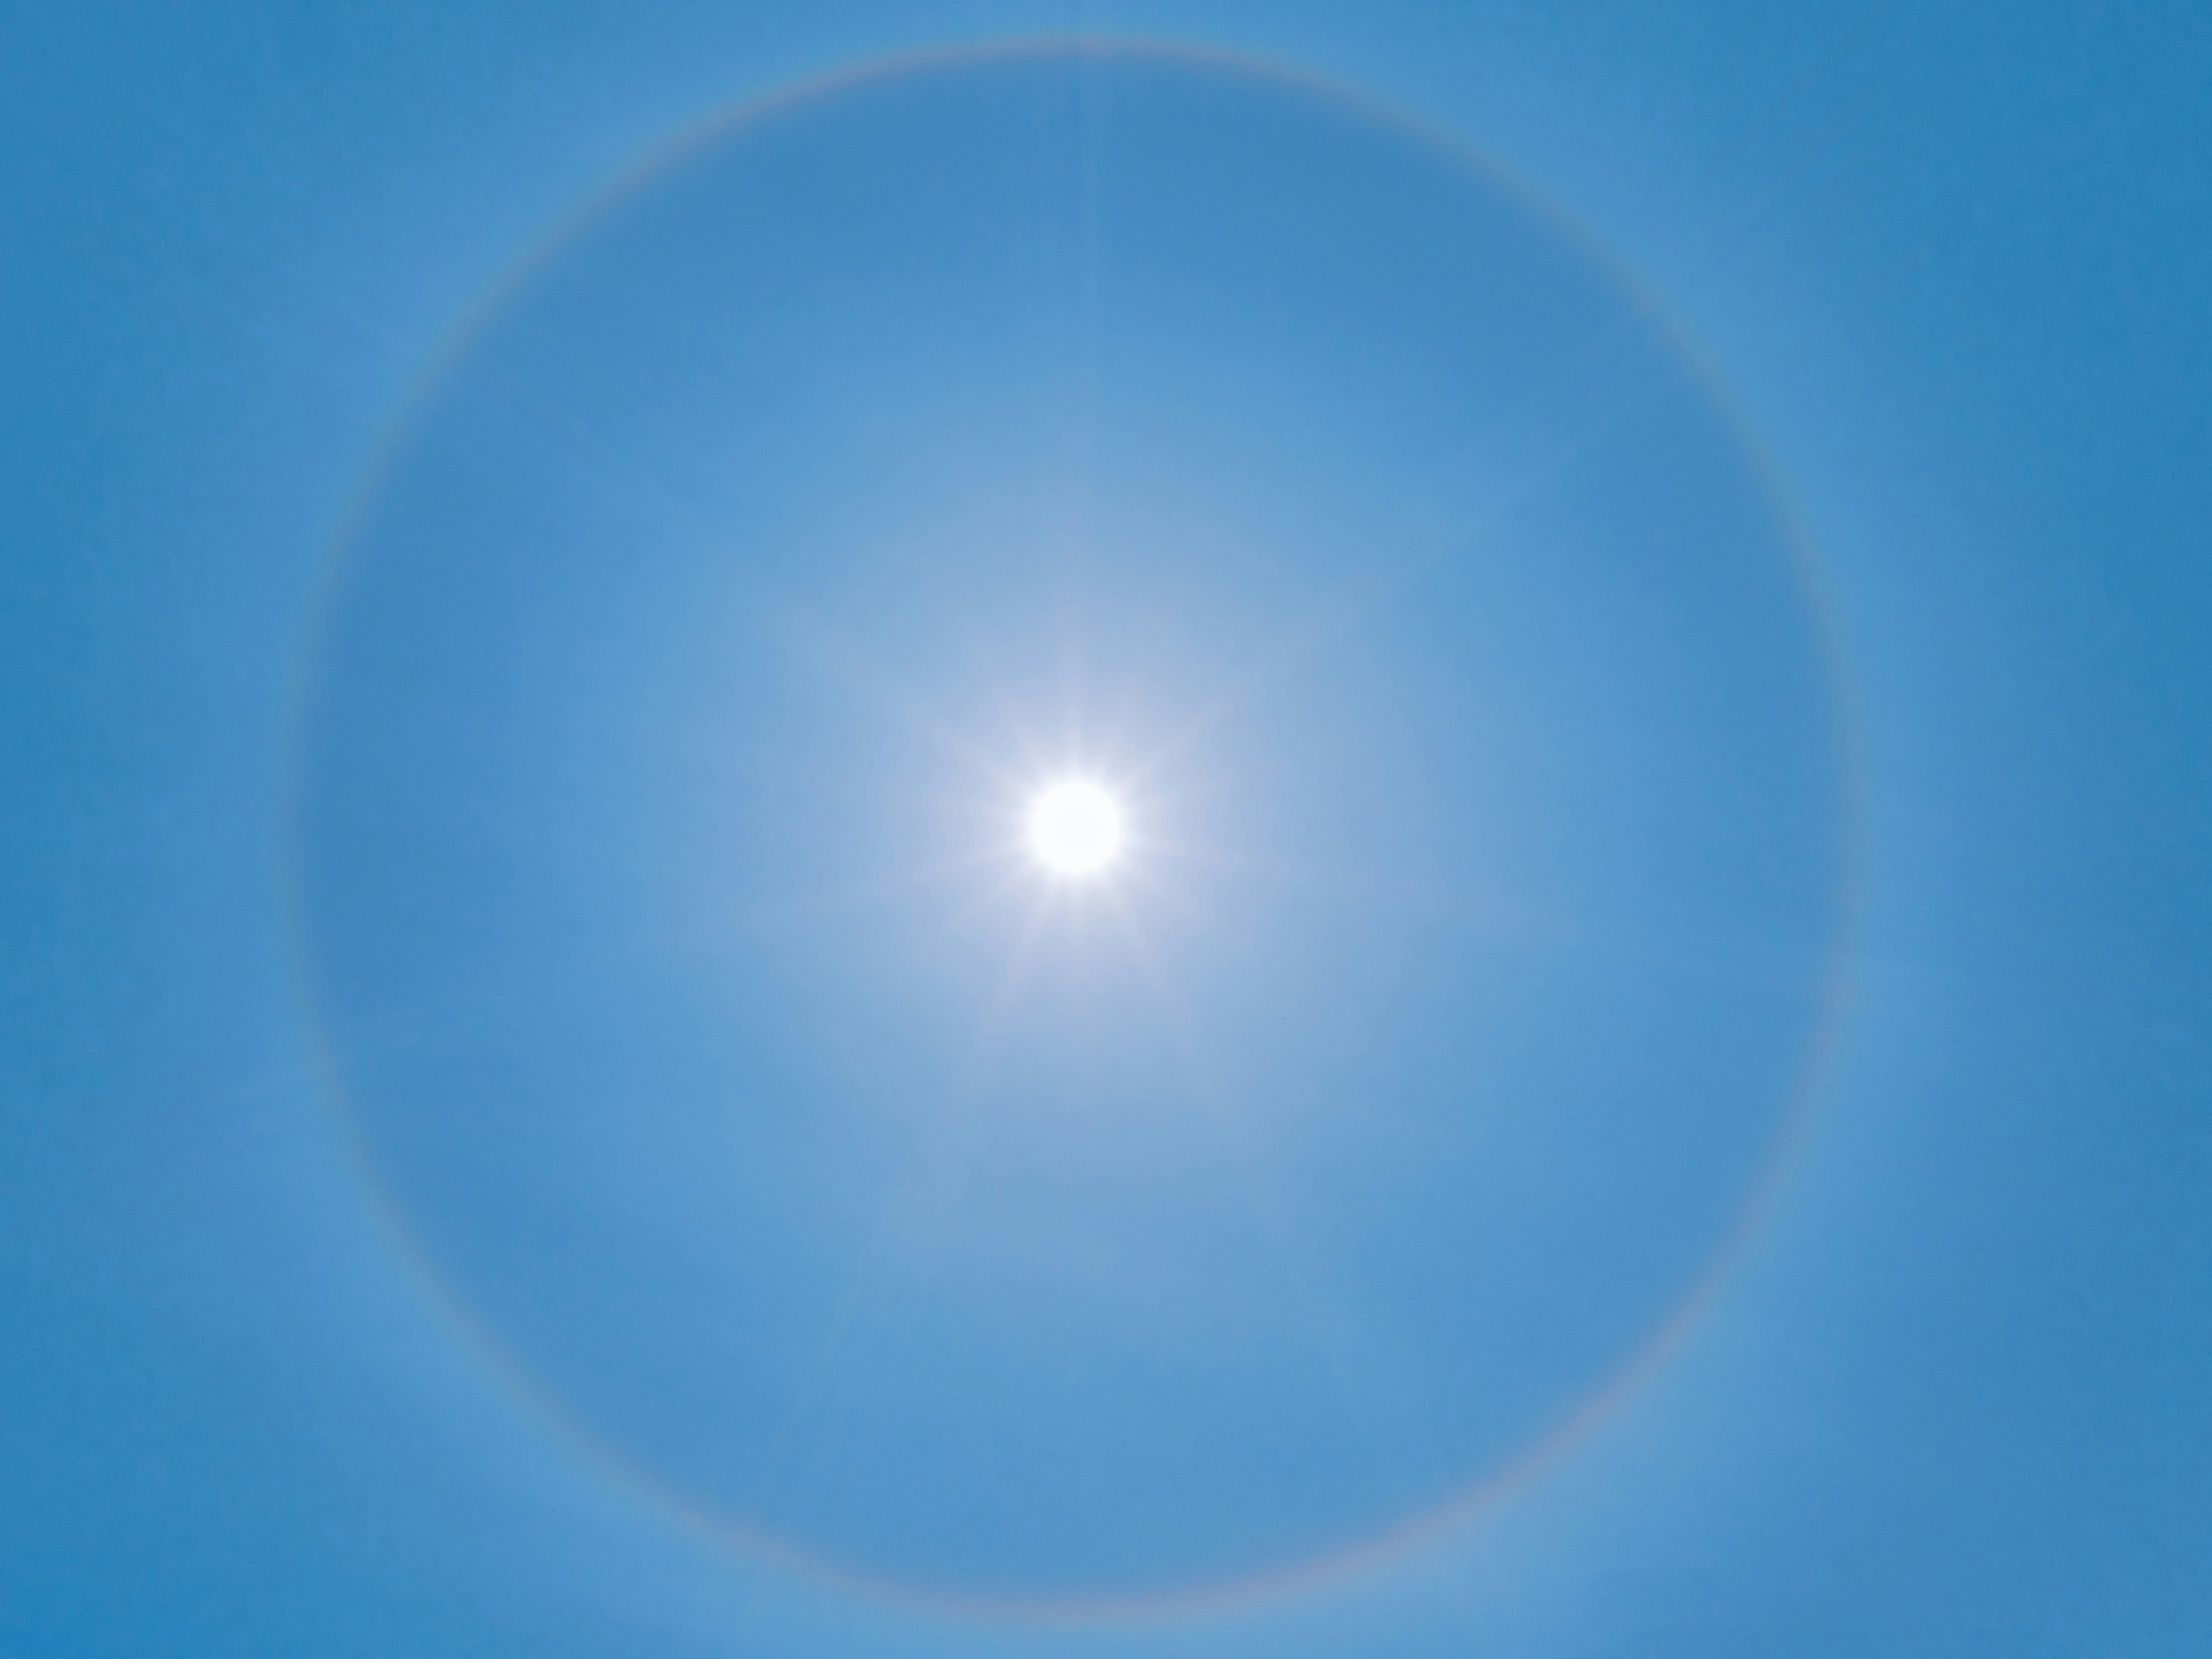 Photo of a sun halo on a clear blue sky